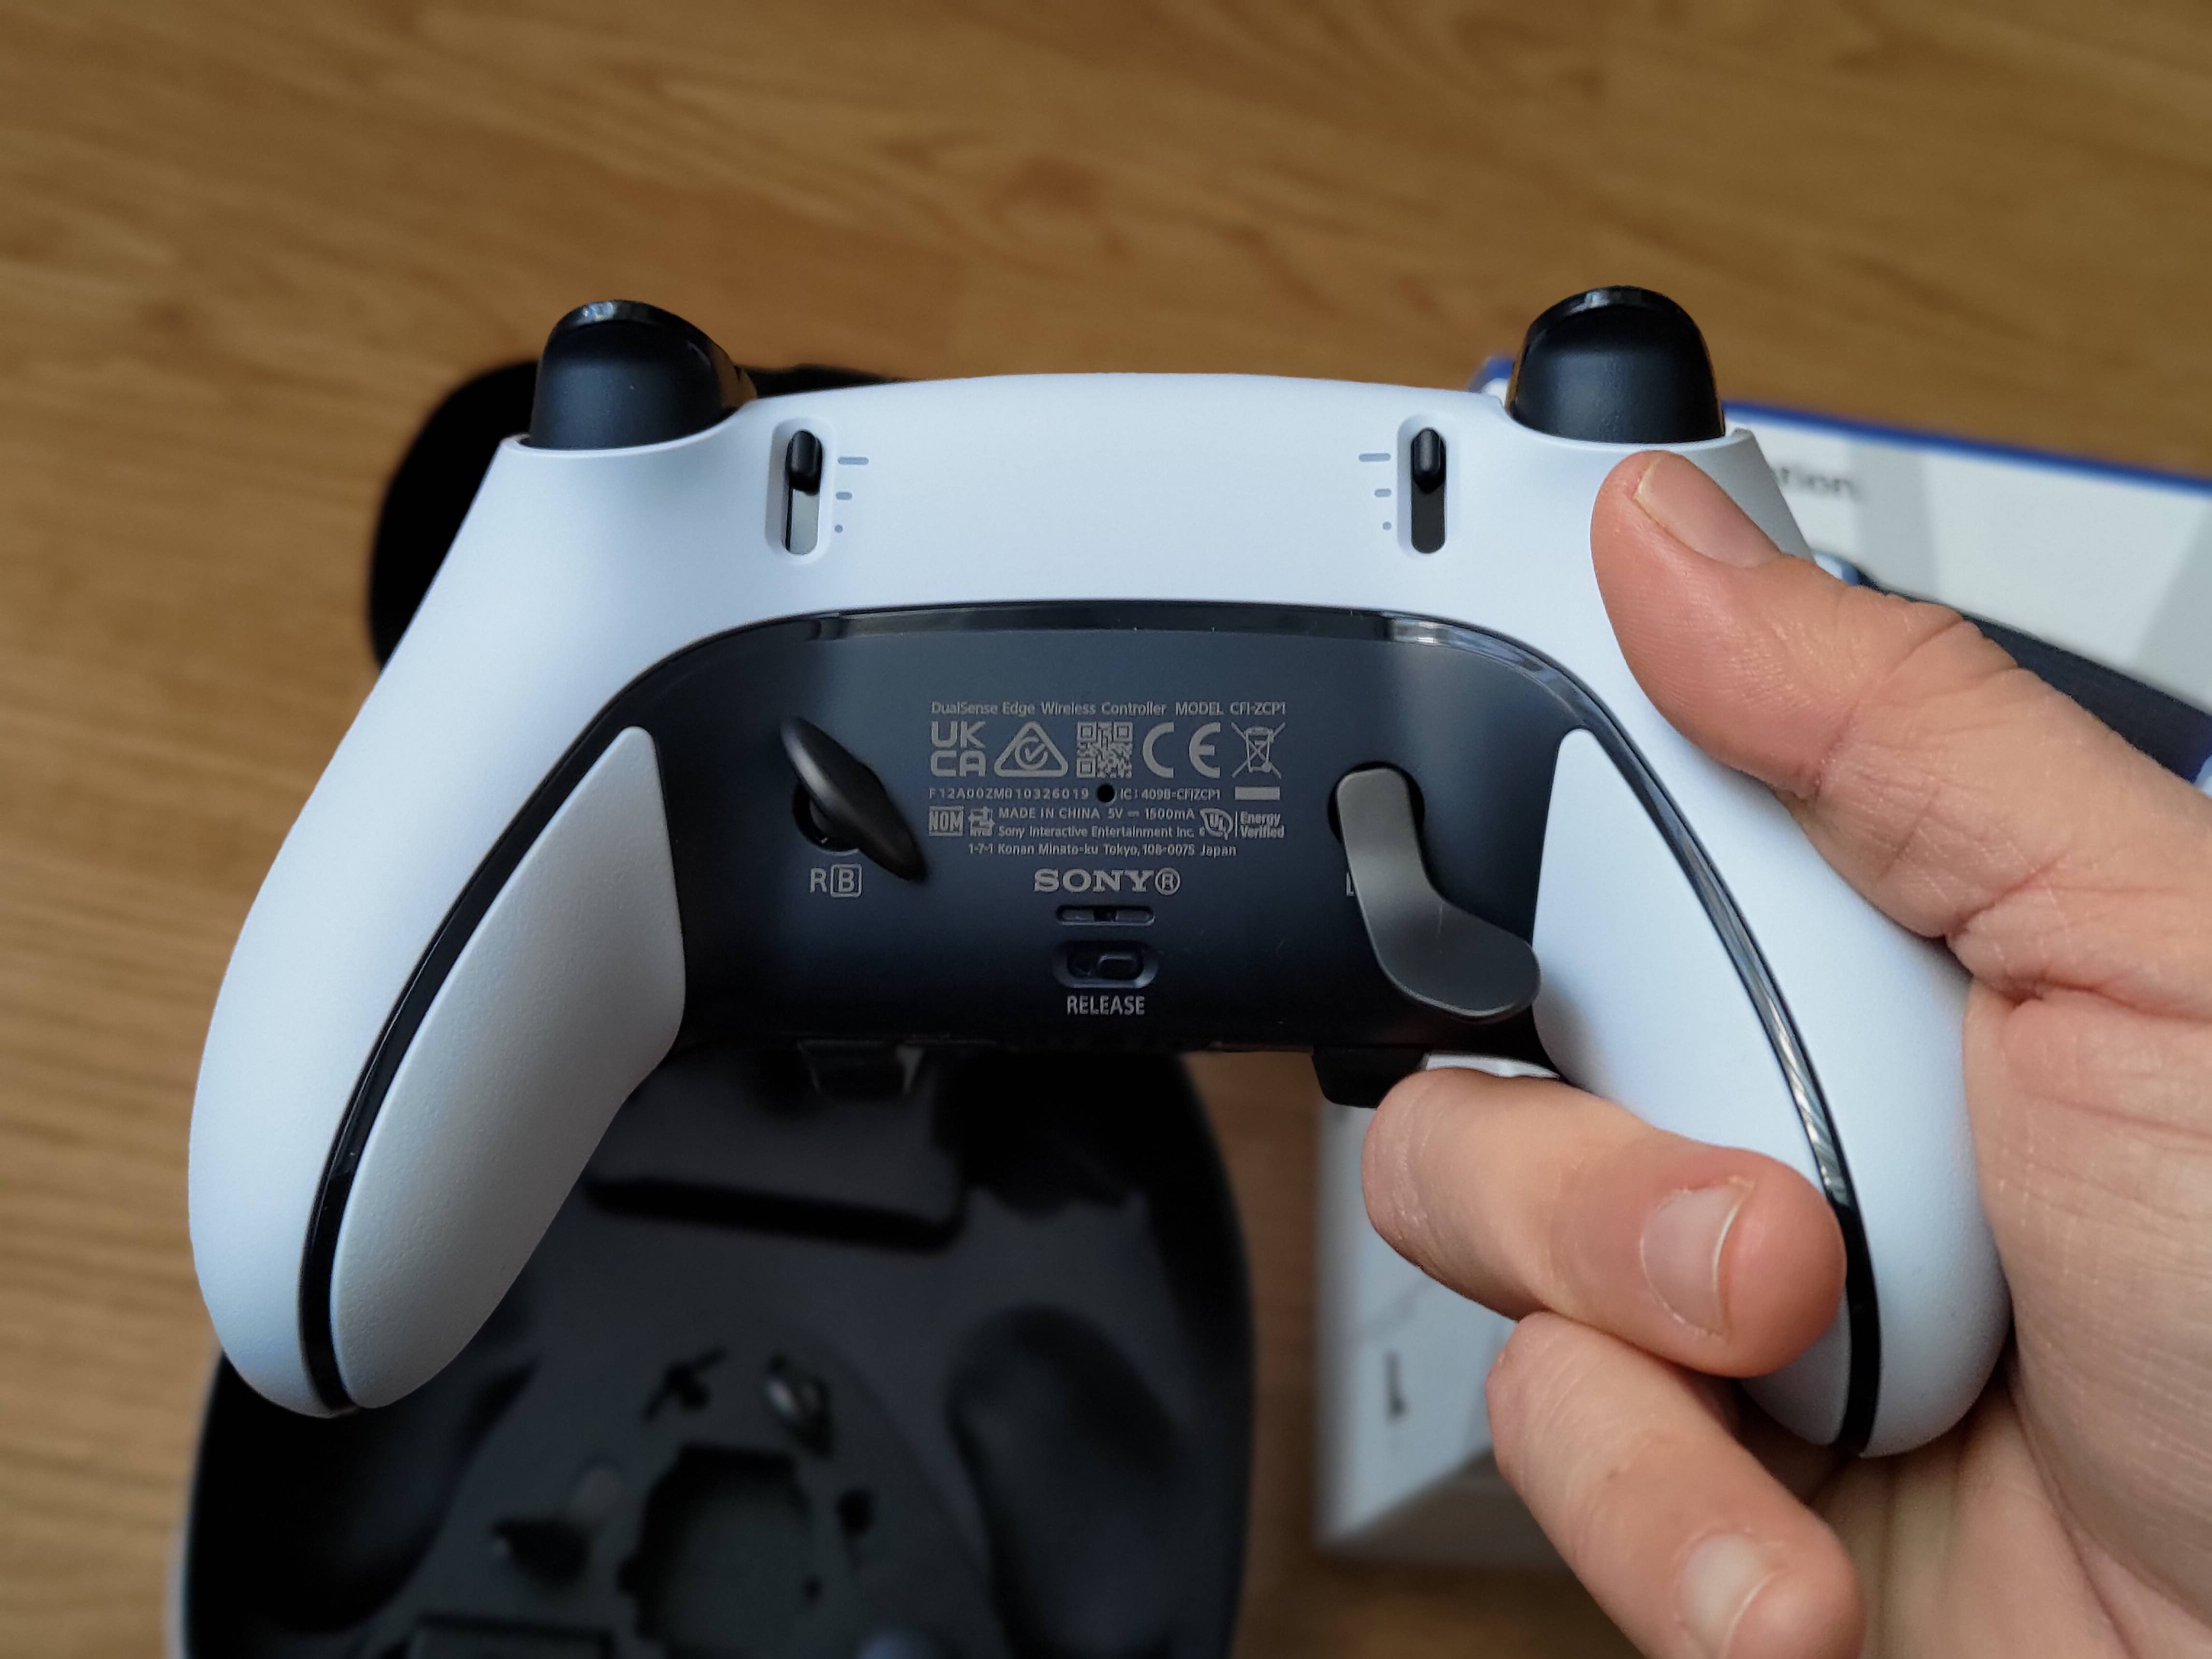 Análisis de Dualsense Edge, ¿el mando Pro definitivo de PS5?